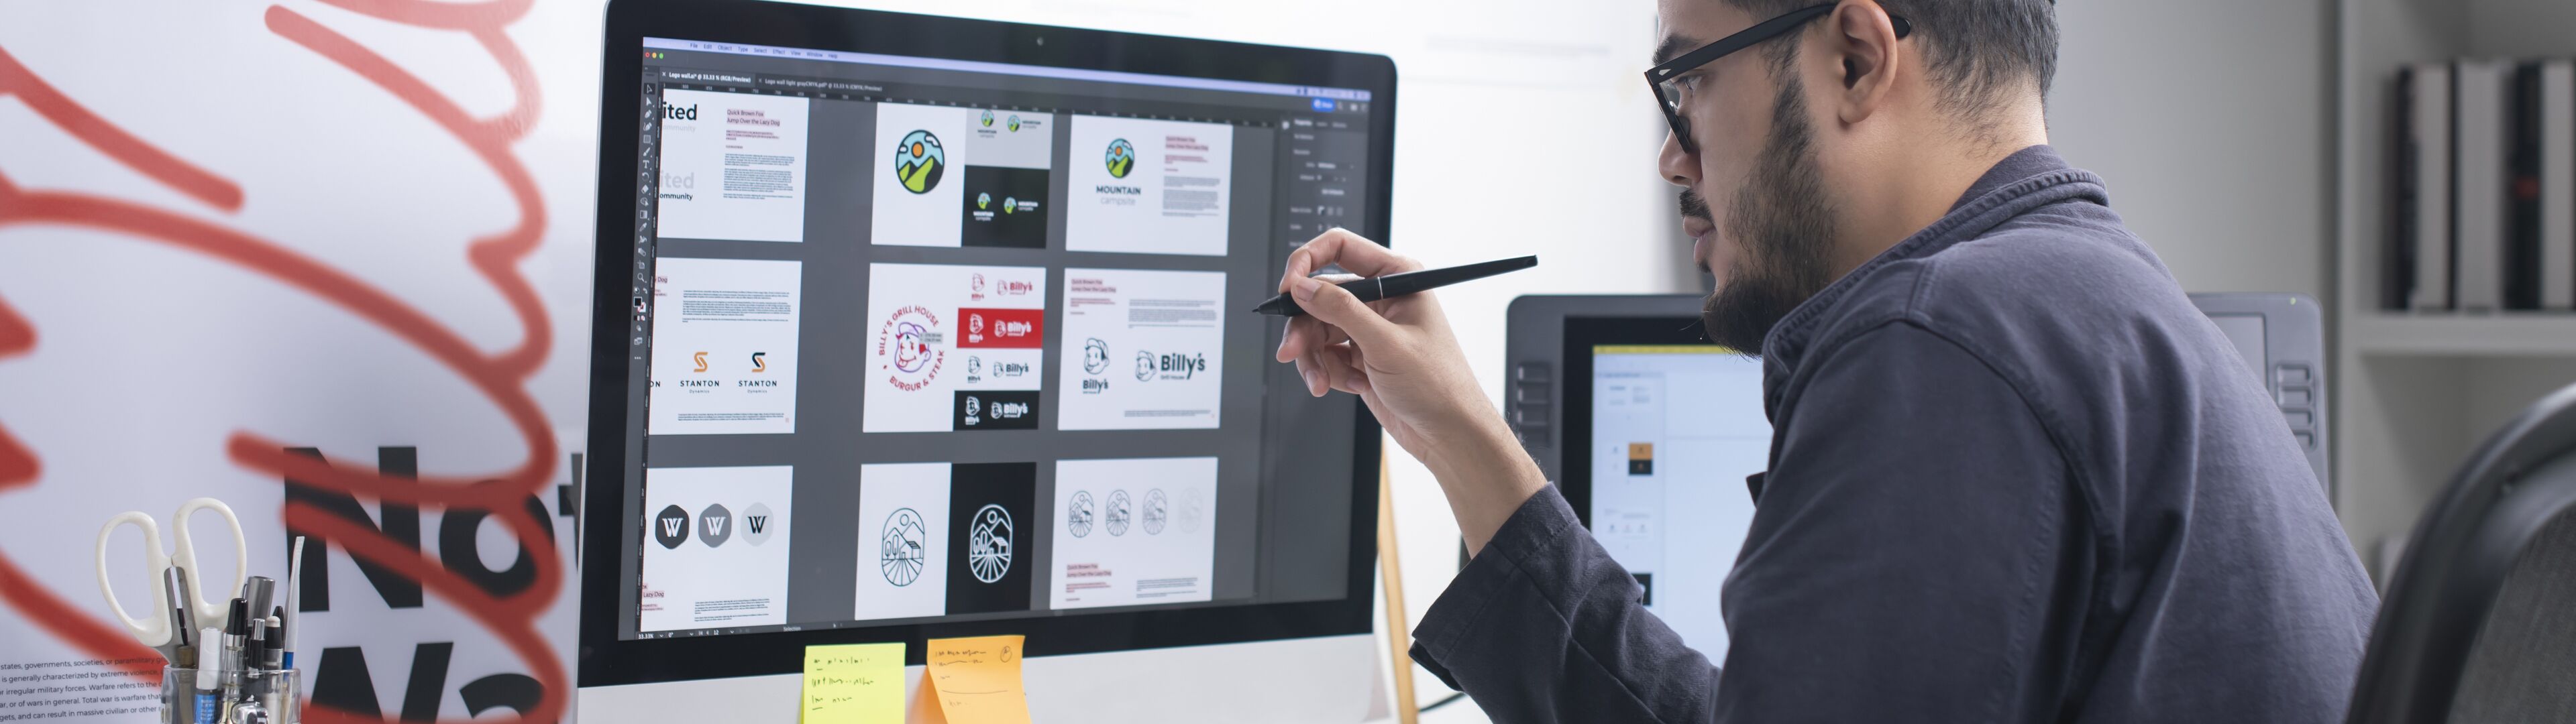 Un graphiste masculin portant un bonnet examine des conceptions sur un grand écran, stylet en main, dans un espace de travail bien organisé.